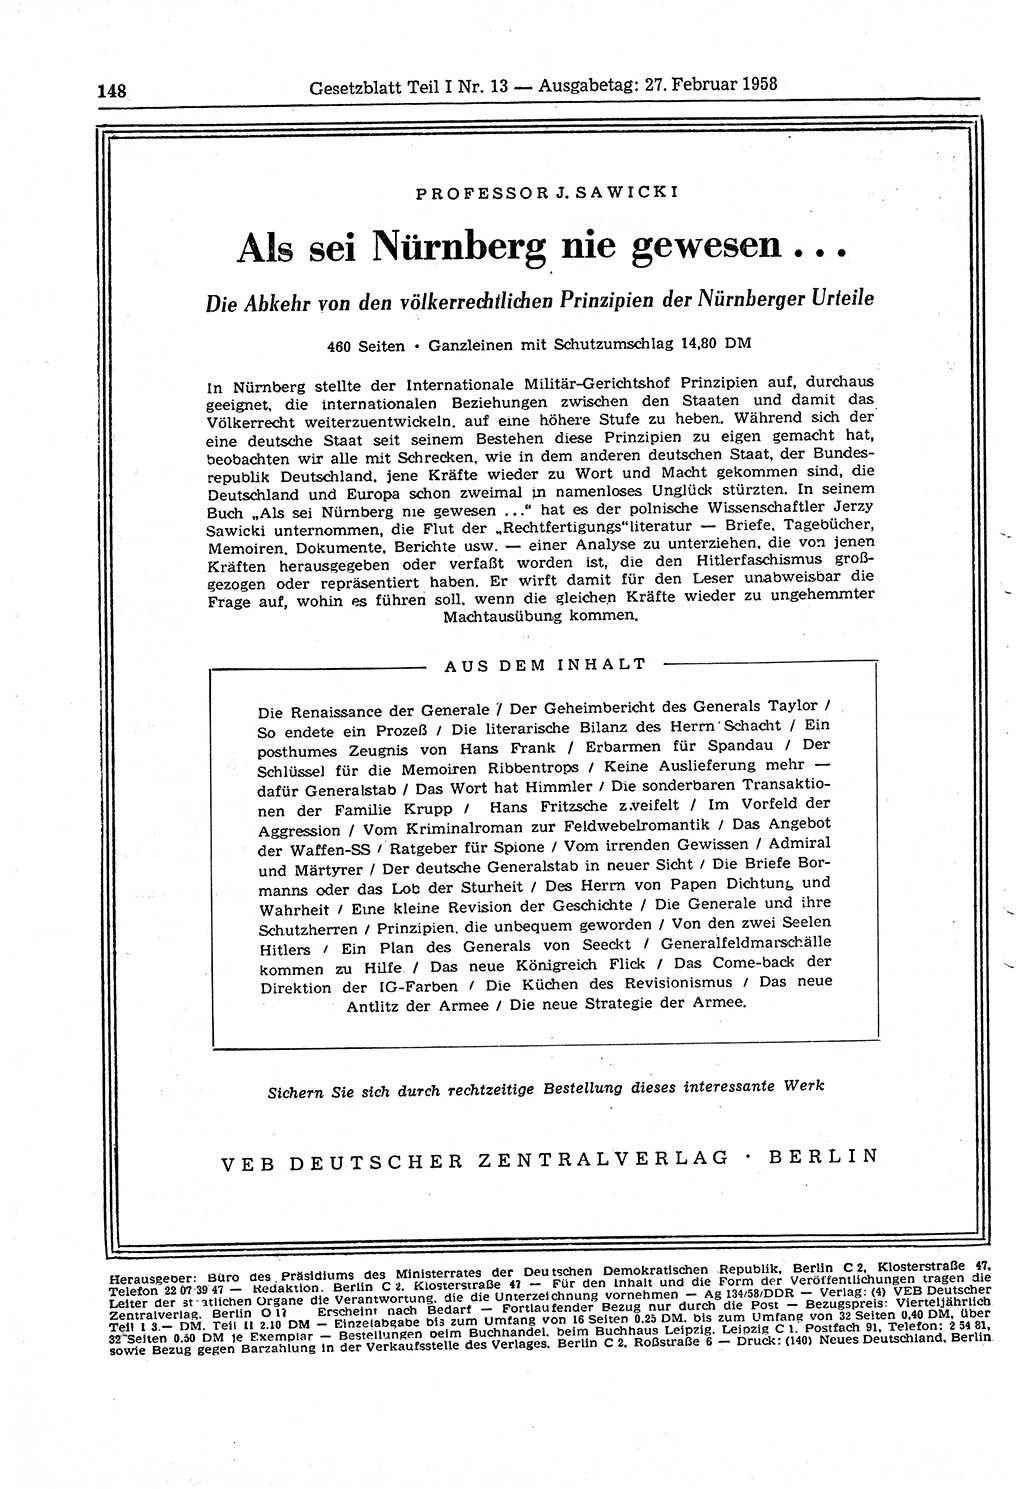 Gesetzblatt (GBl.) der Deutschen Demokratischen Republik (DDR) Teil Ⅰ 1958, Seite 148 (GBl. DDR Ⅰ 1958, S. 148)